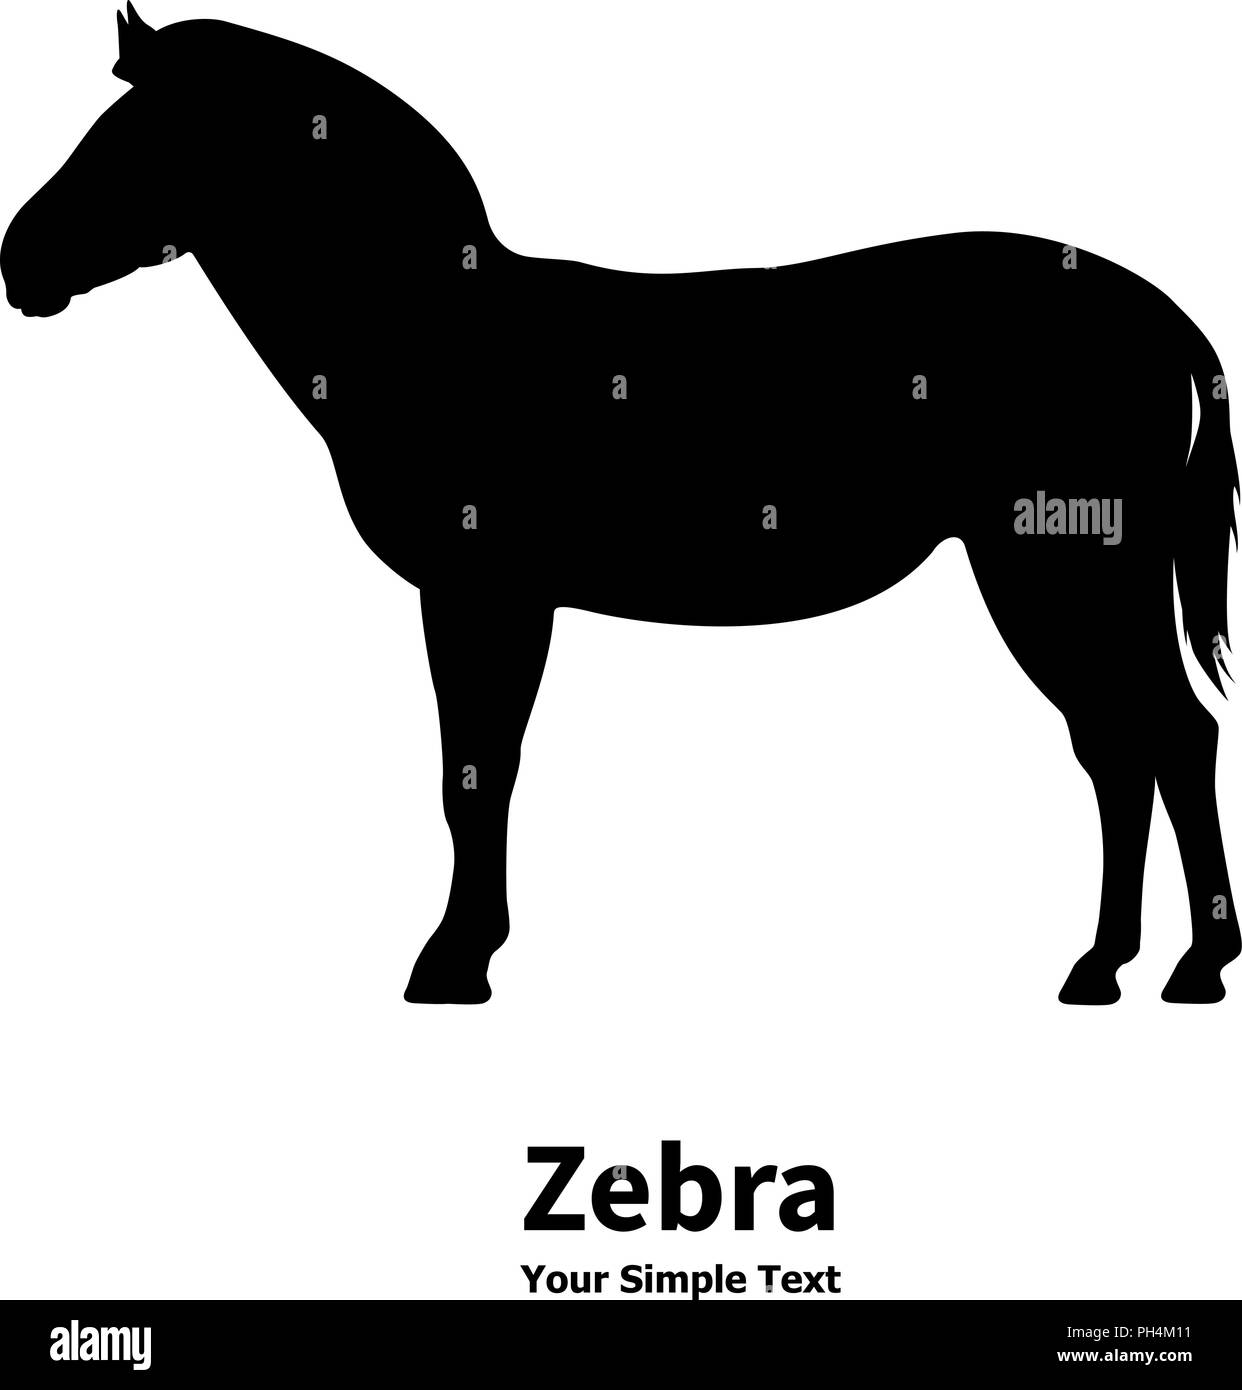 Vector illustration silhouette of zebra Stock Vector